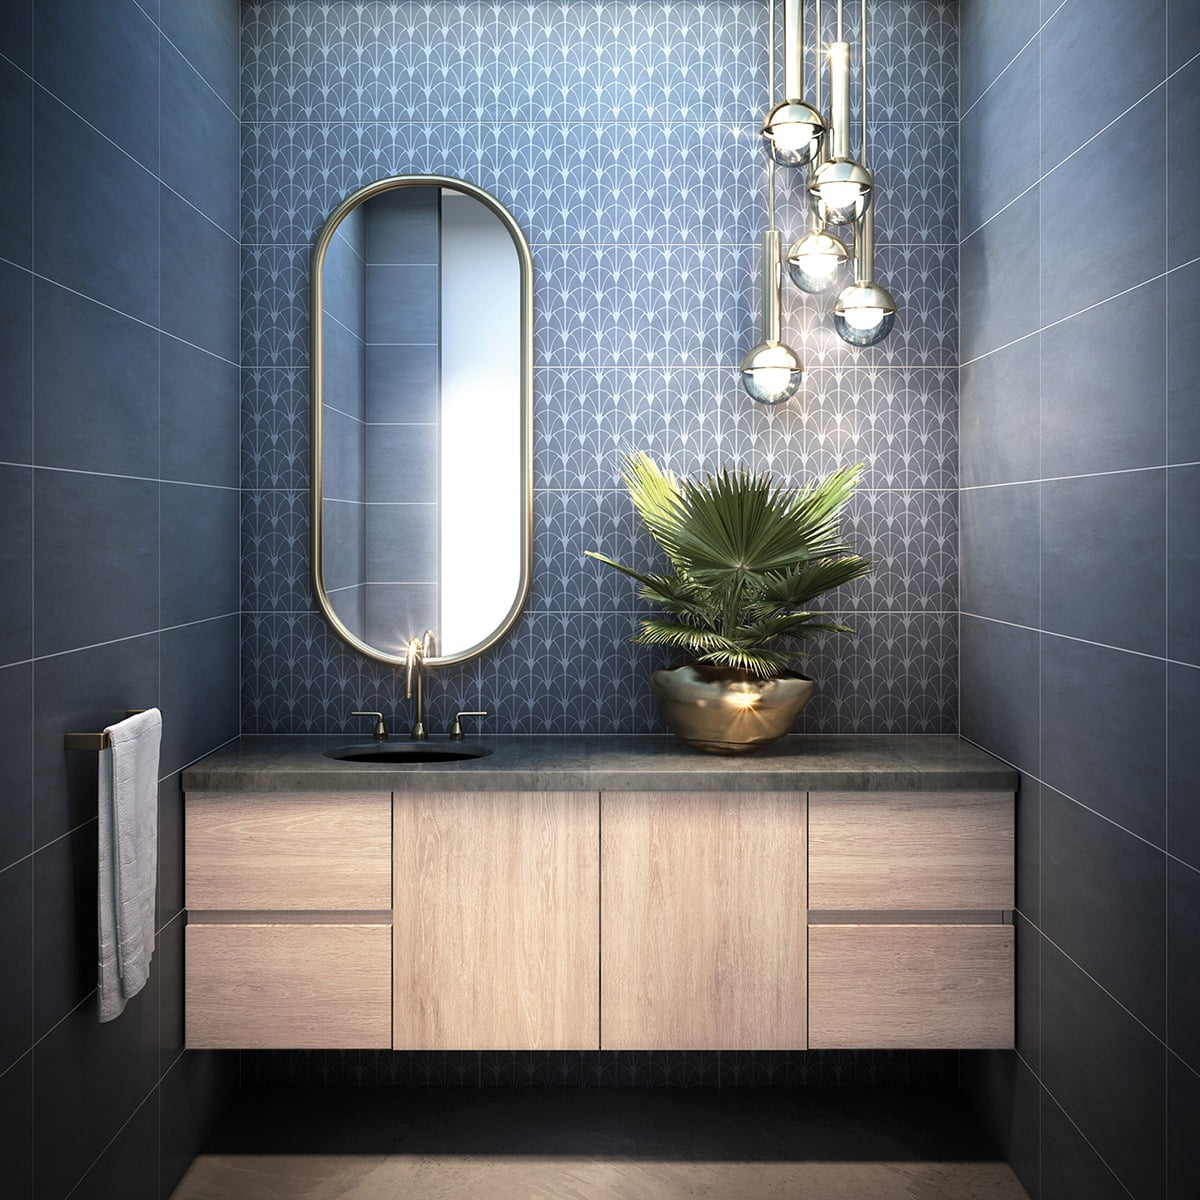 Plumbing fixture, Bathroom cabinet, Mirror, Tap, Sink, Cabinetry, Product, Countertop, Building, Purple